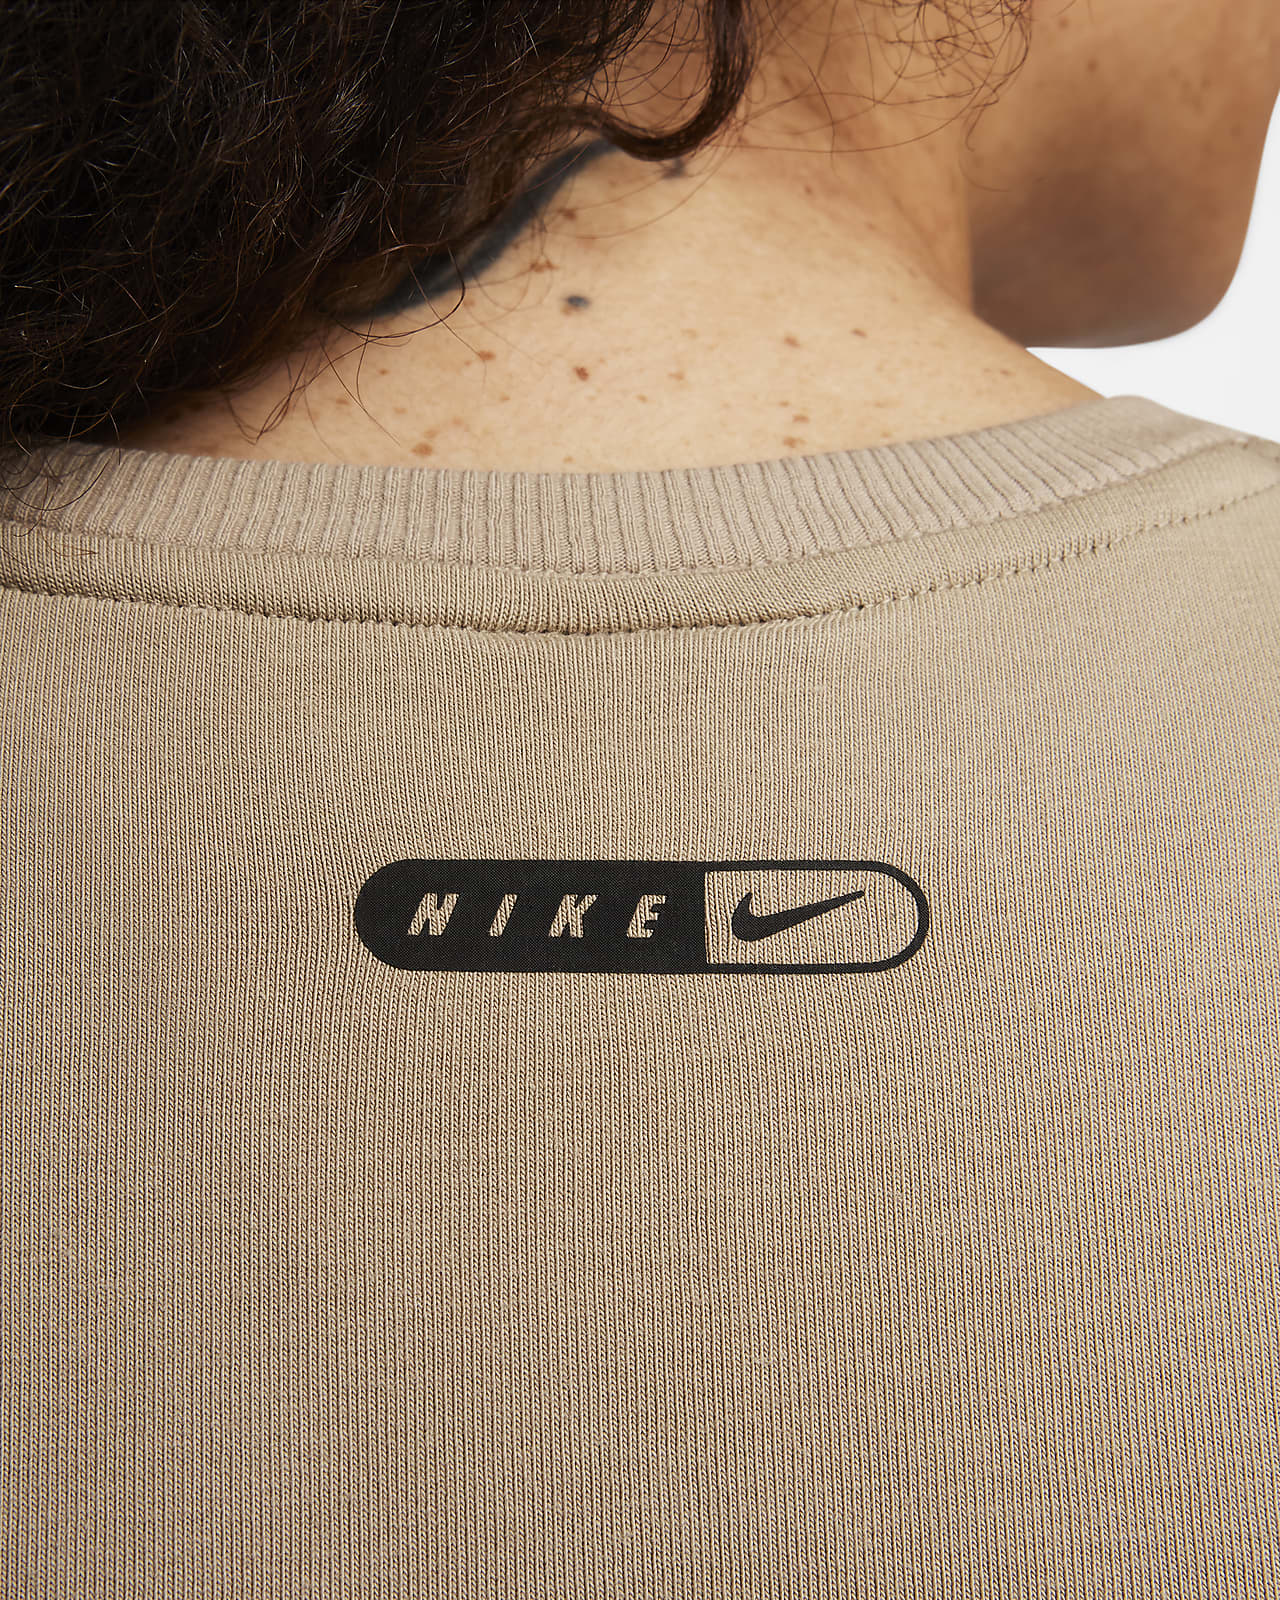 Nike Sportswear Women's Cropped T-Shirt. Nike LU